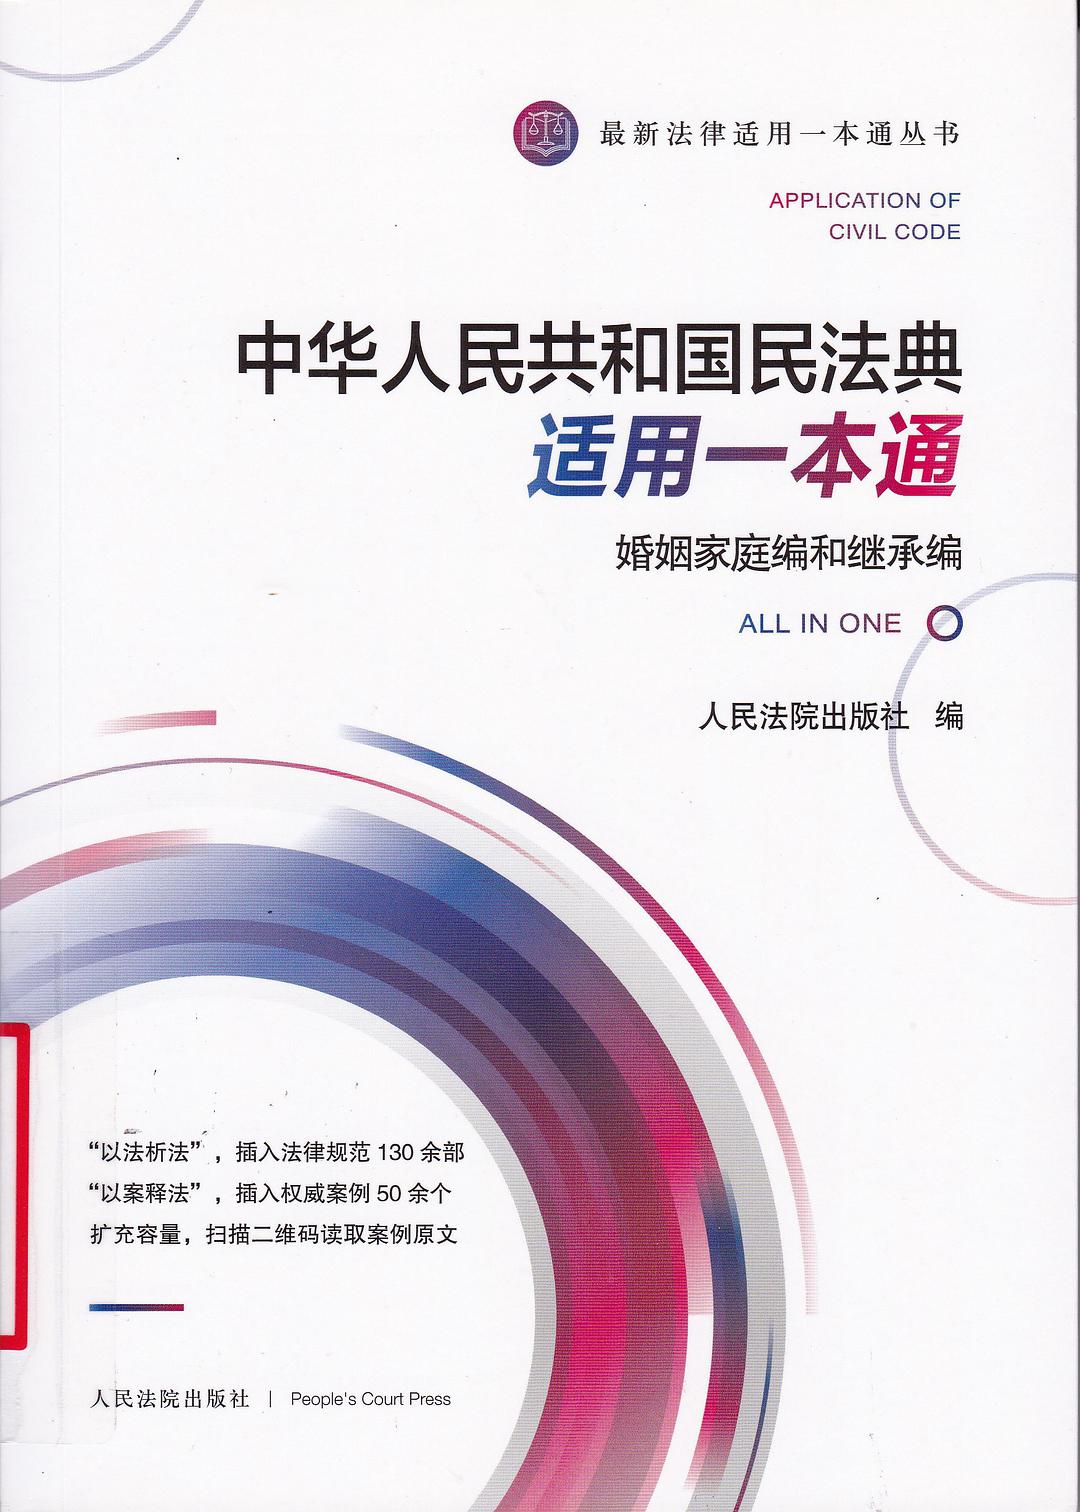 中华人民共和国民法典适用一本通 婚姻家庭编和继承编